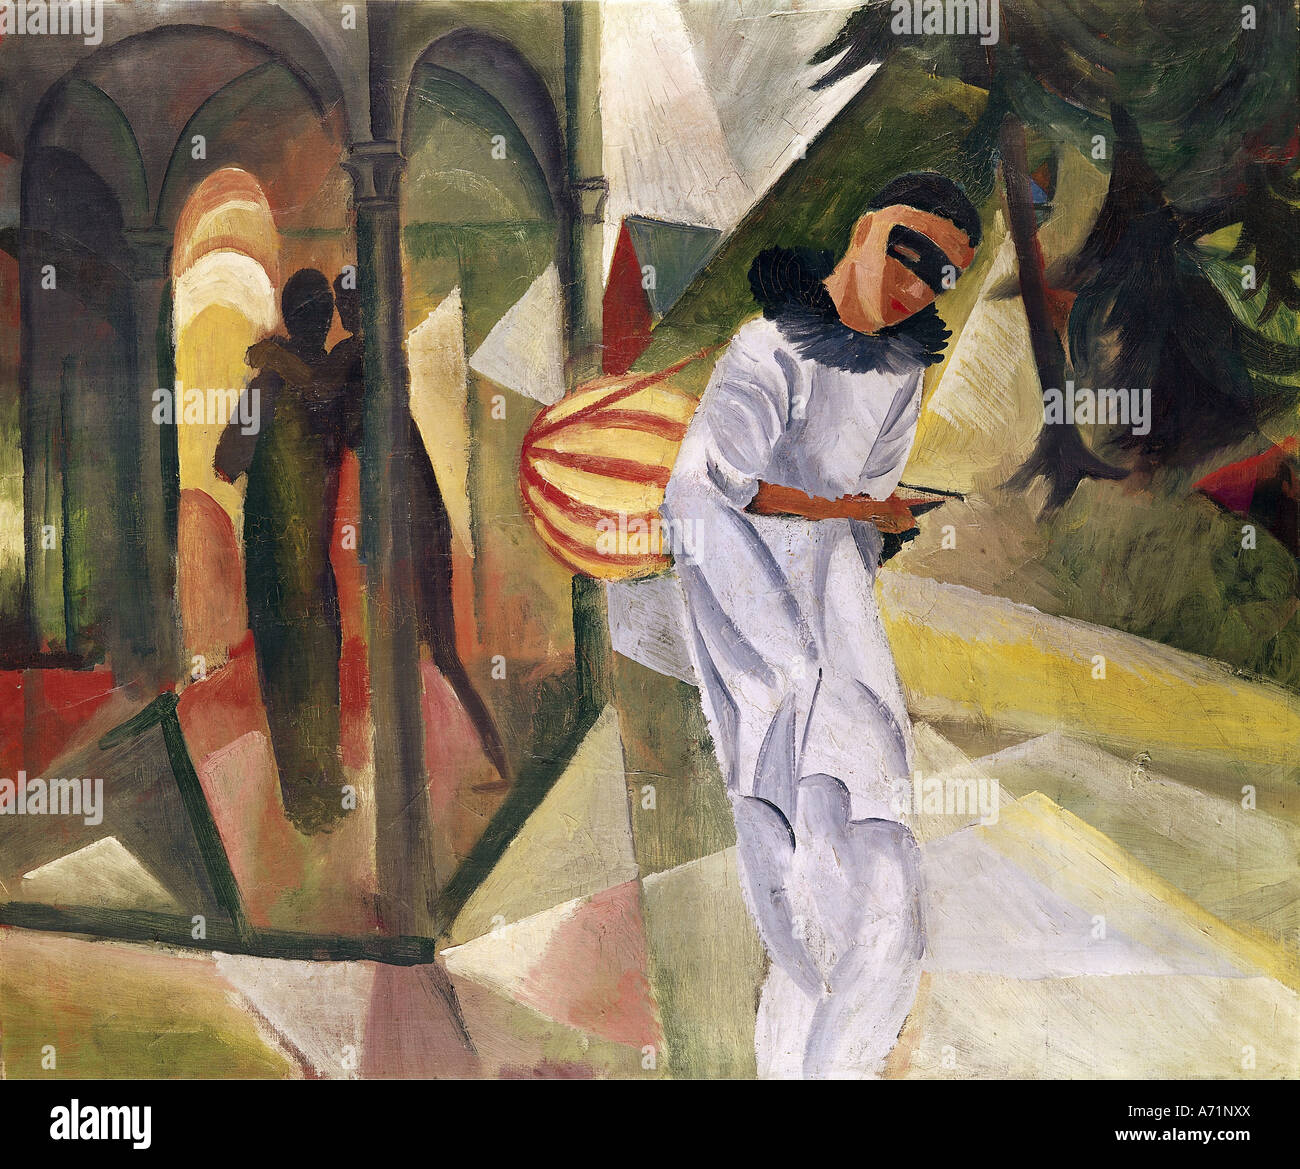 "Belle Arti, Macke, Agosto (1887 - 1914), pittura, "Pierrot", 1913, olio su tela, 75 cm x 90 cm, sala delle arti, Bielefeld, hi Foto Stock